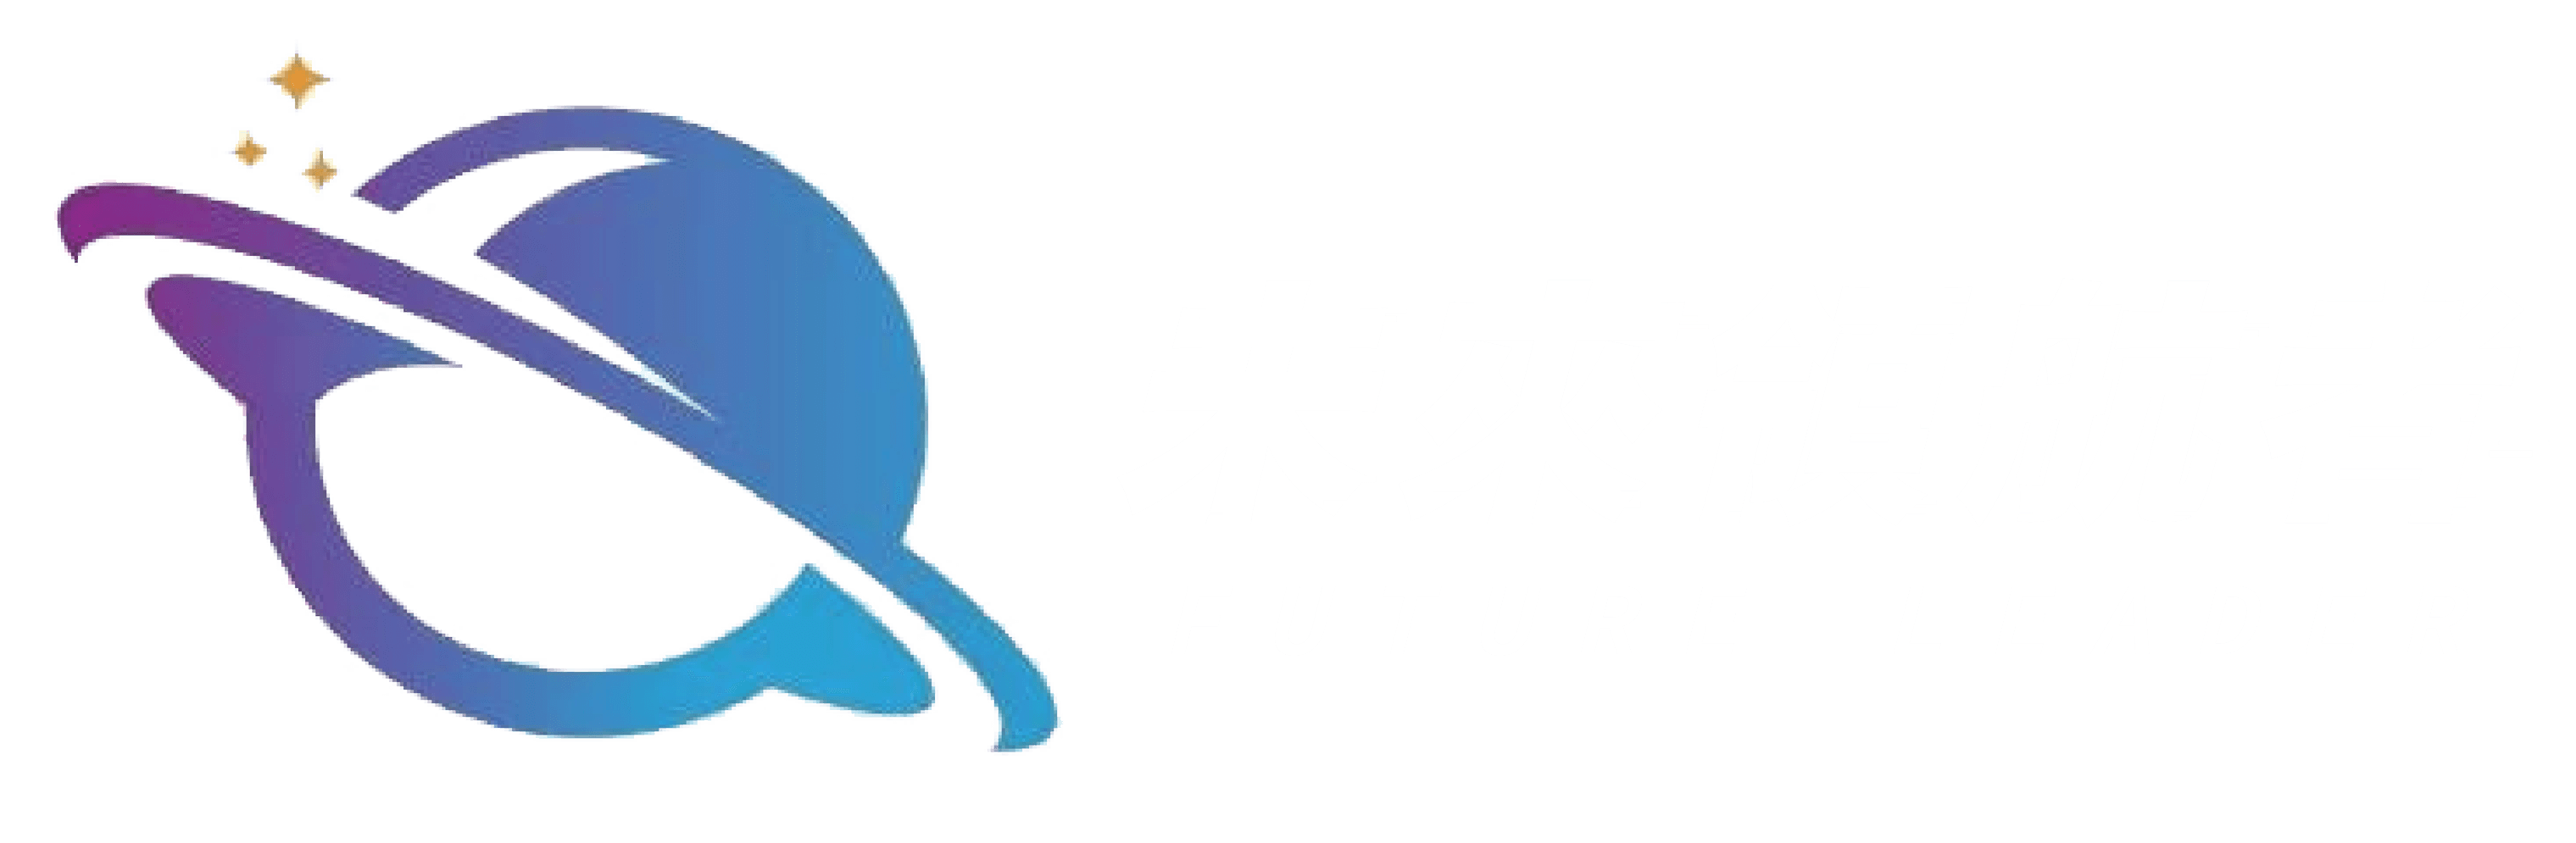 未來領航者Future Leader｜引領你前往未來的道路